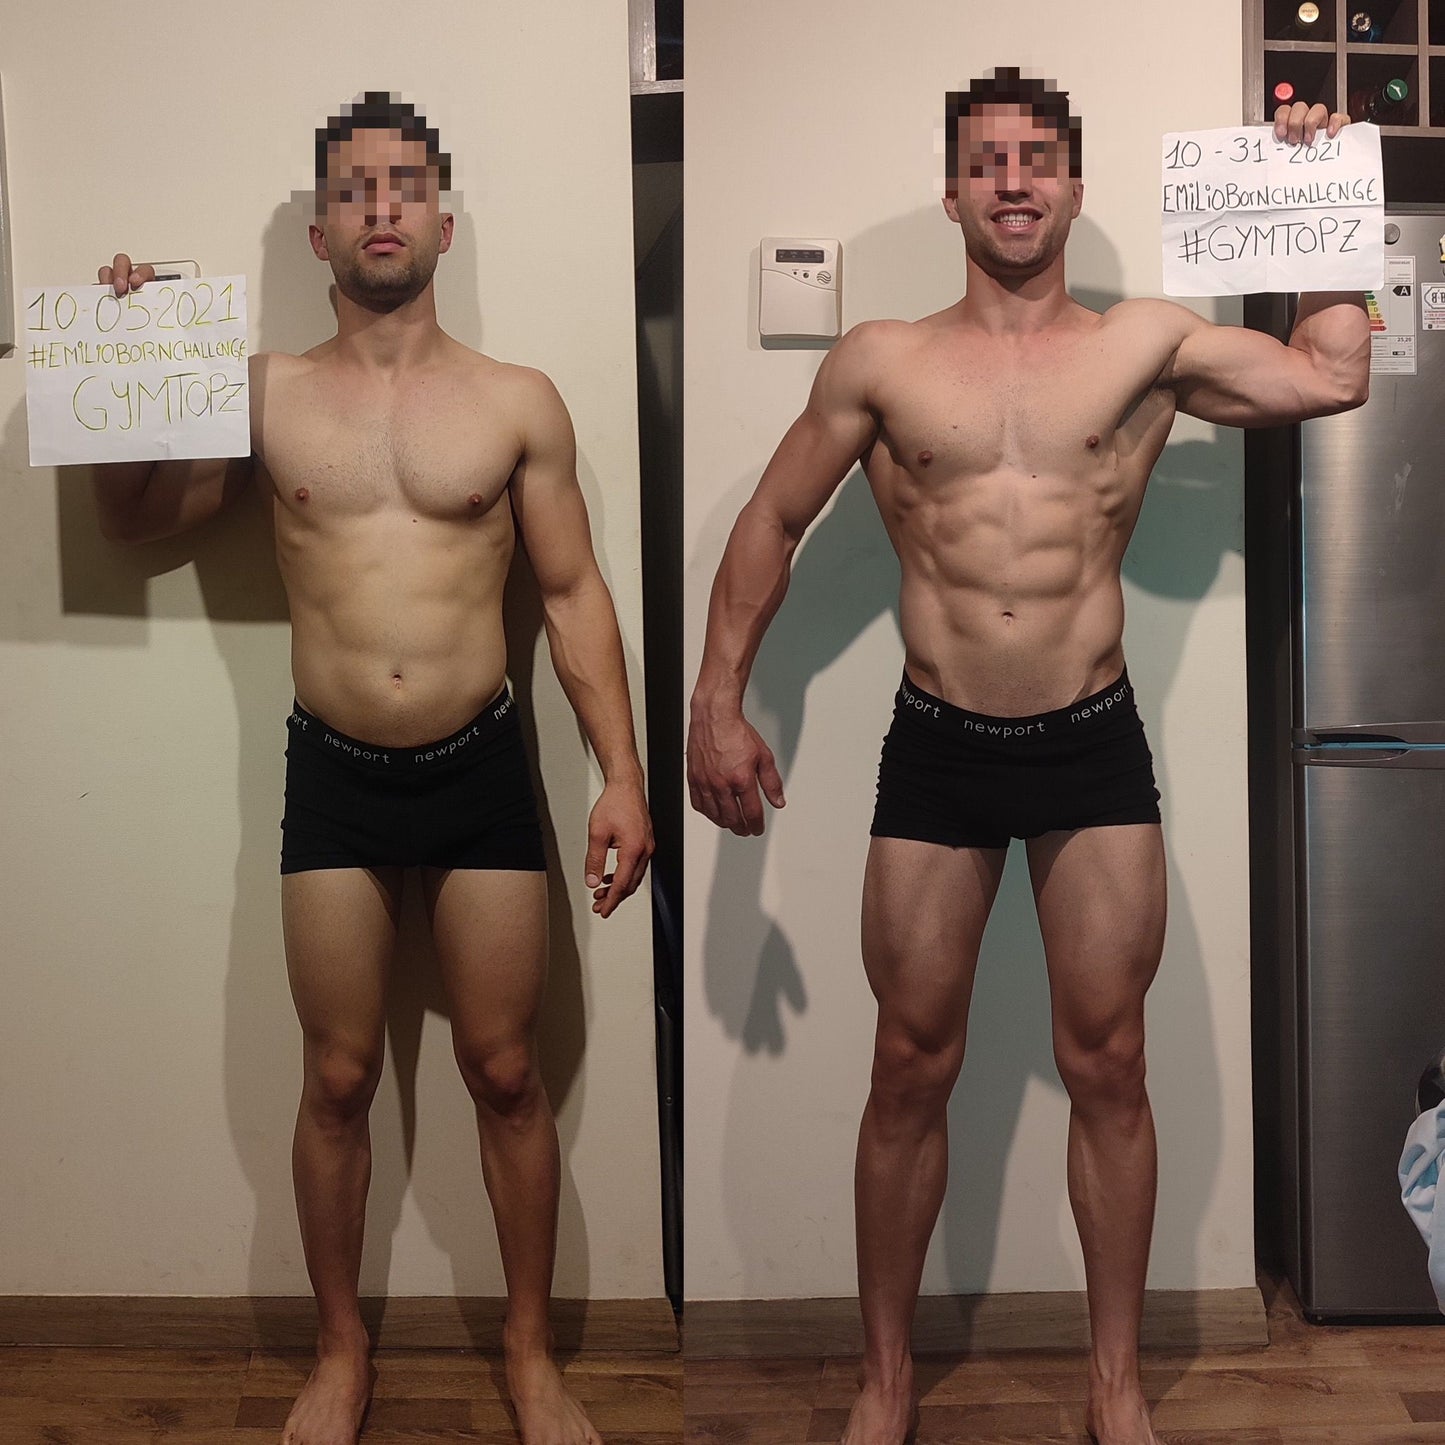 EmilioBornChallenge 45: Transforma tu Cuerpo en 4 Semanas